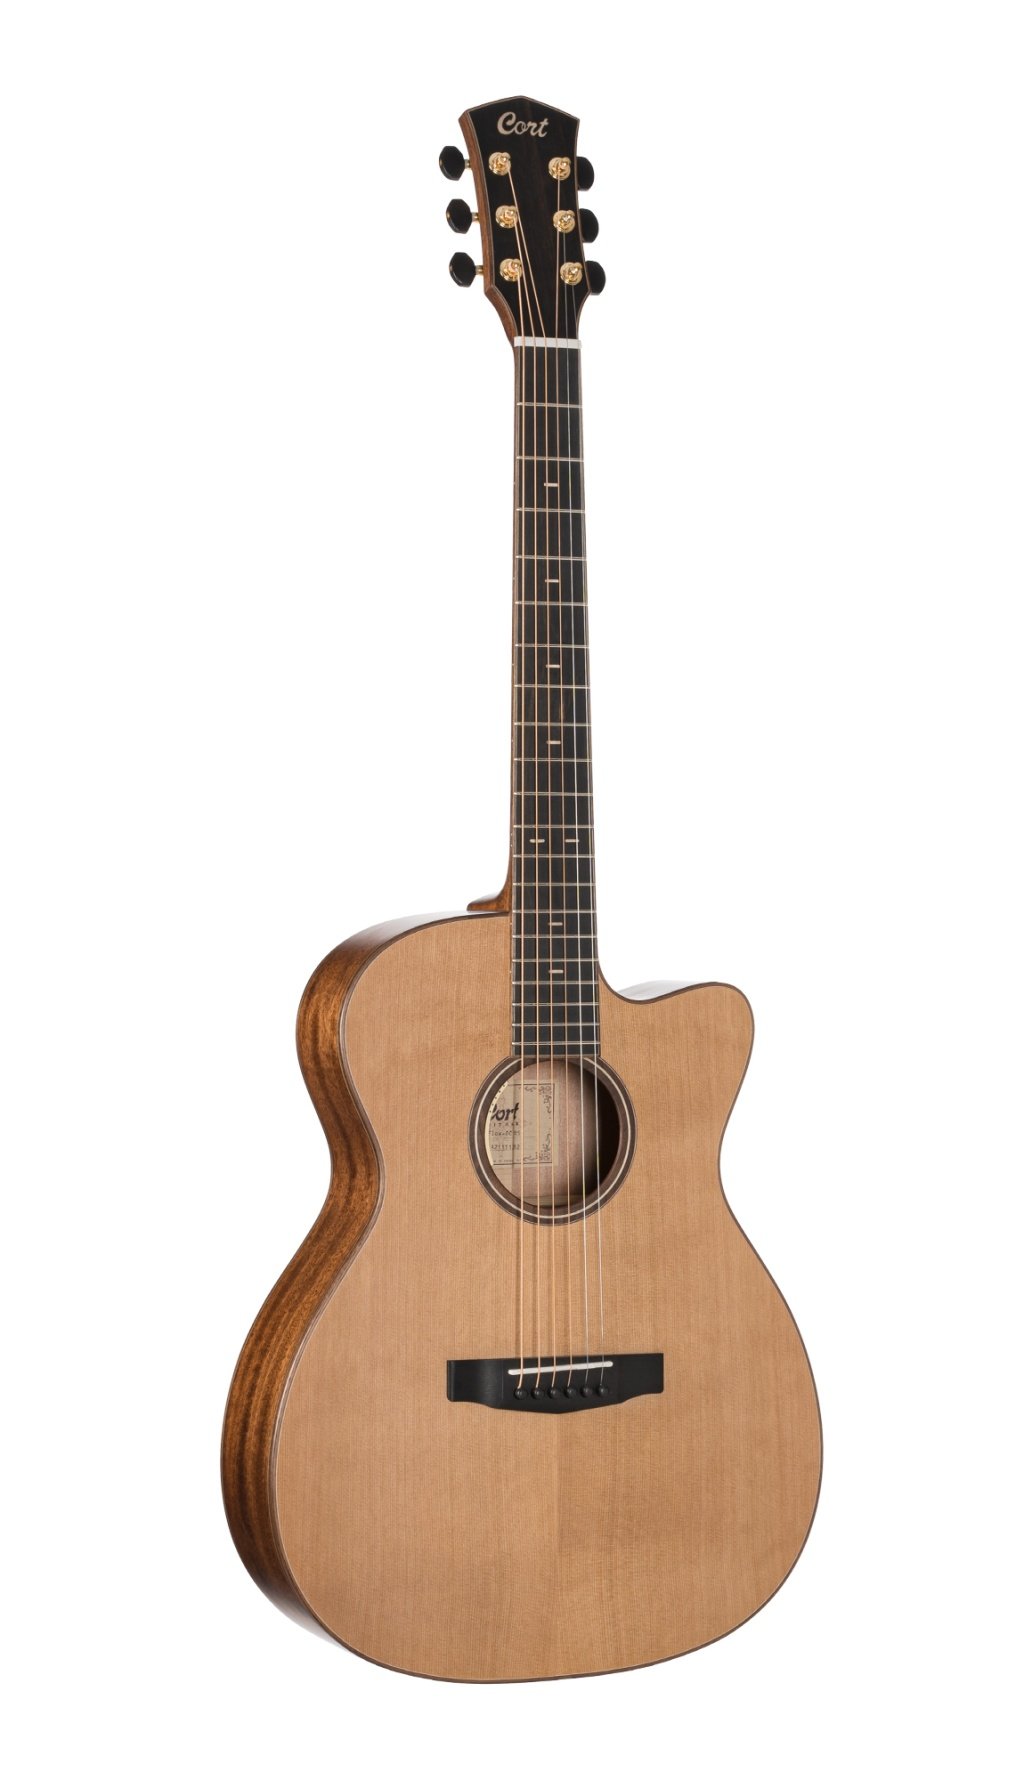 Электроакустические гитары Cort Flow-OC-WCASE-NS (чехол в комплекте) чехол для гитары с мензурой 610 мм утеплённый 98 х 38 х 12 см